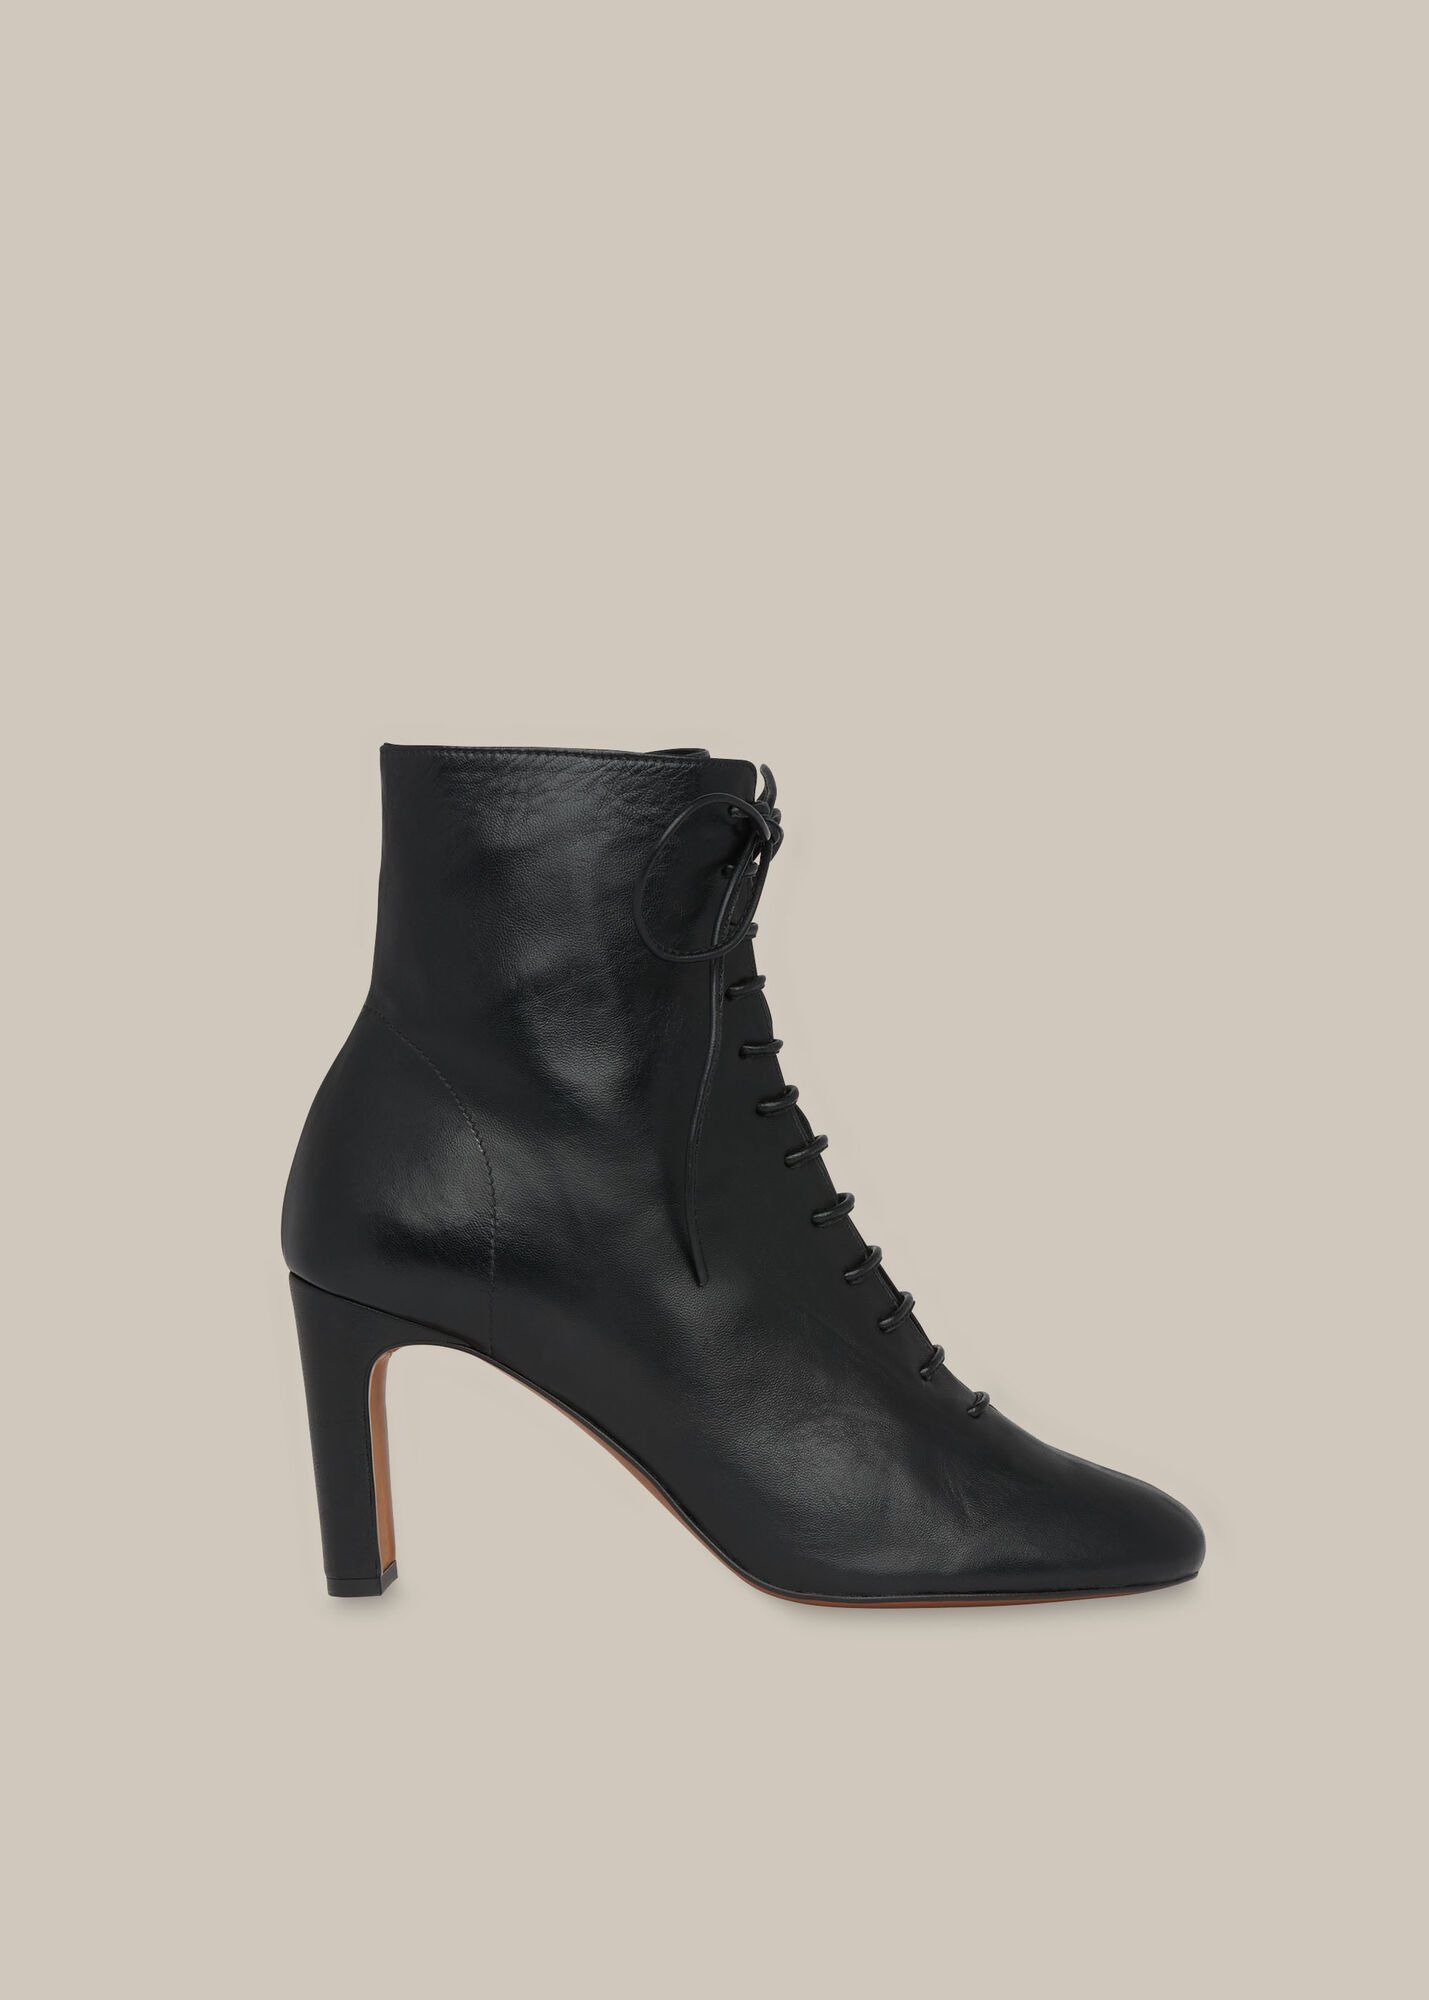 shoe boots black